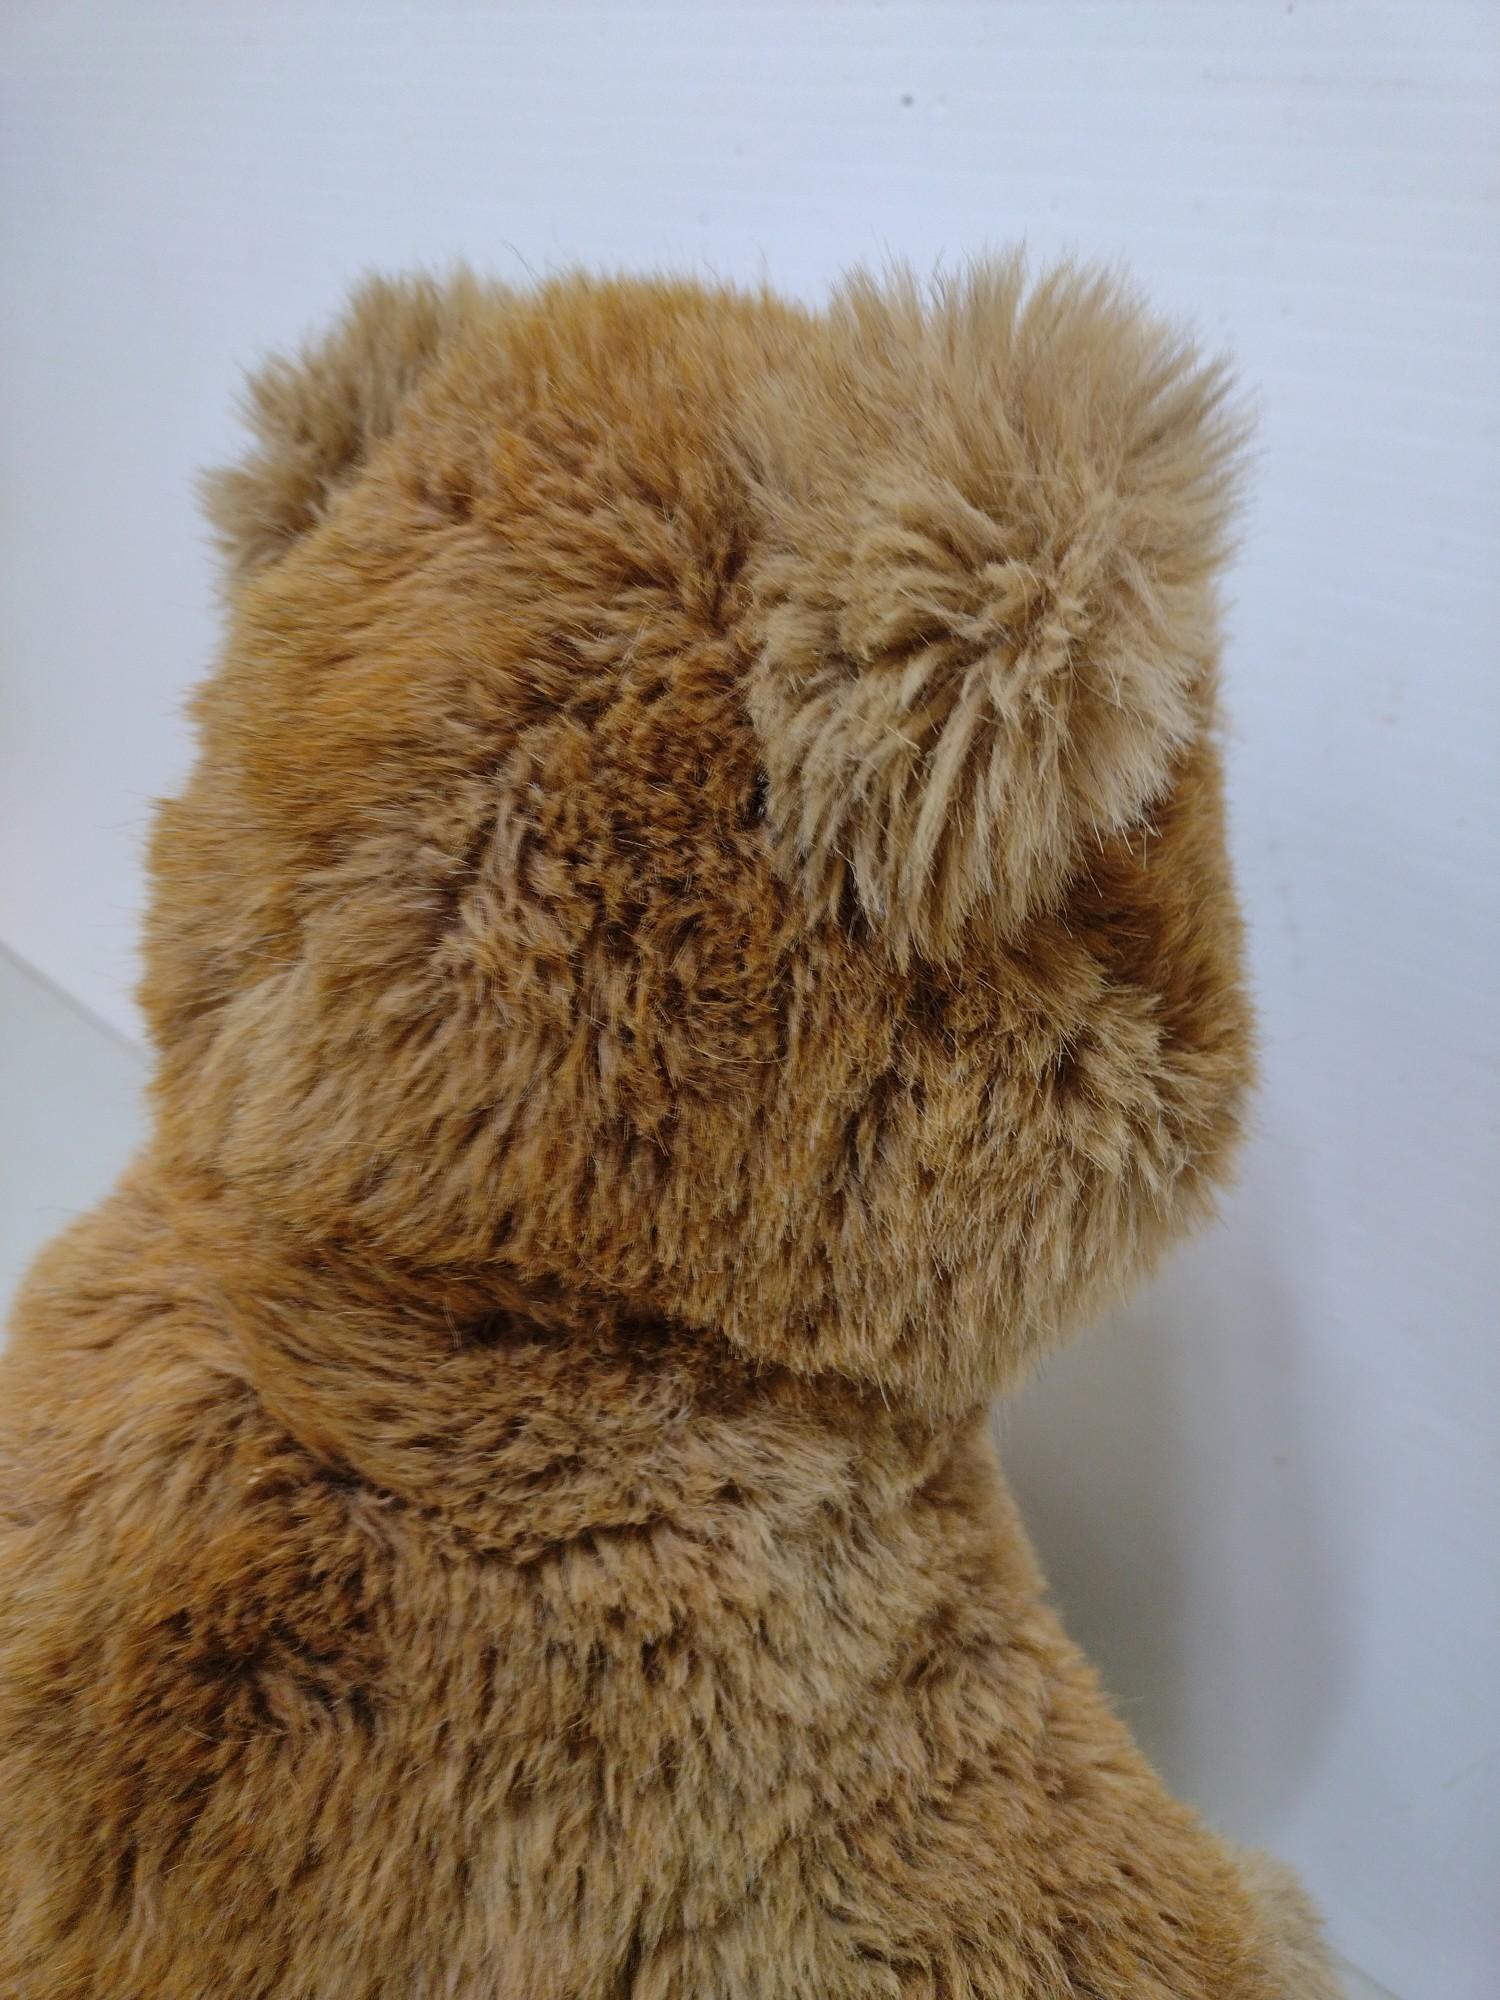 Vintage Steiff Teddy Bear